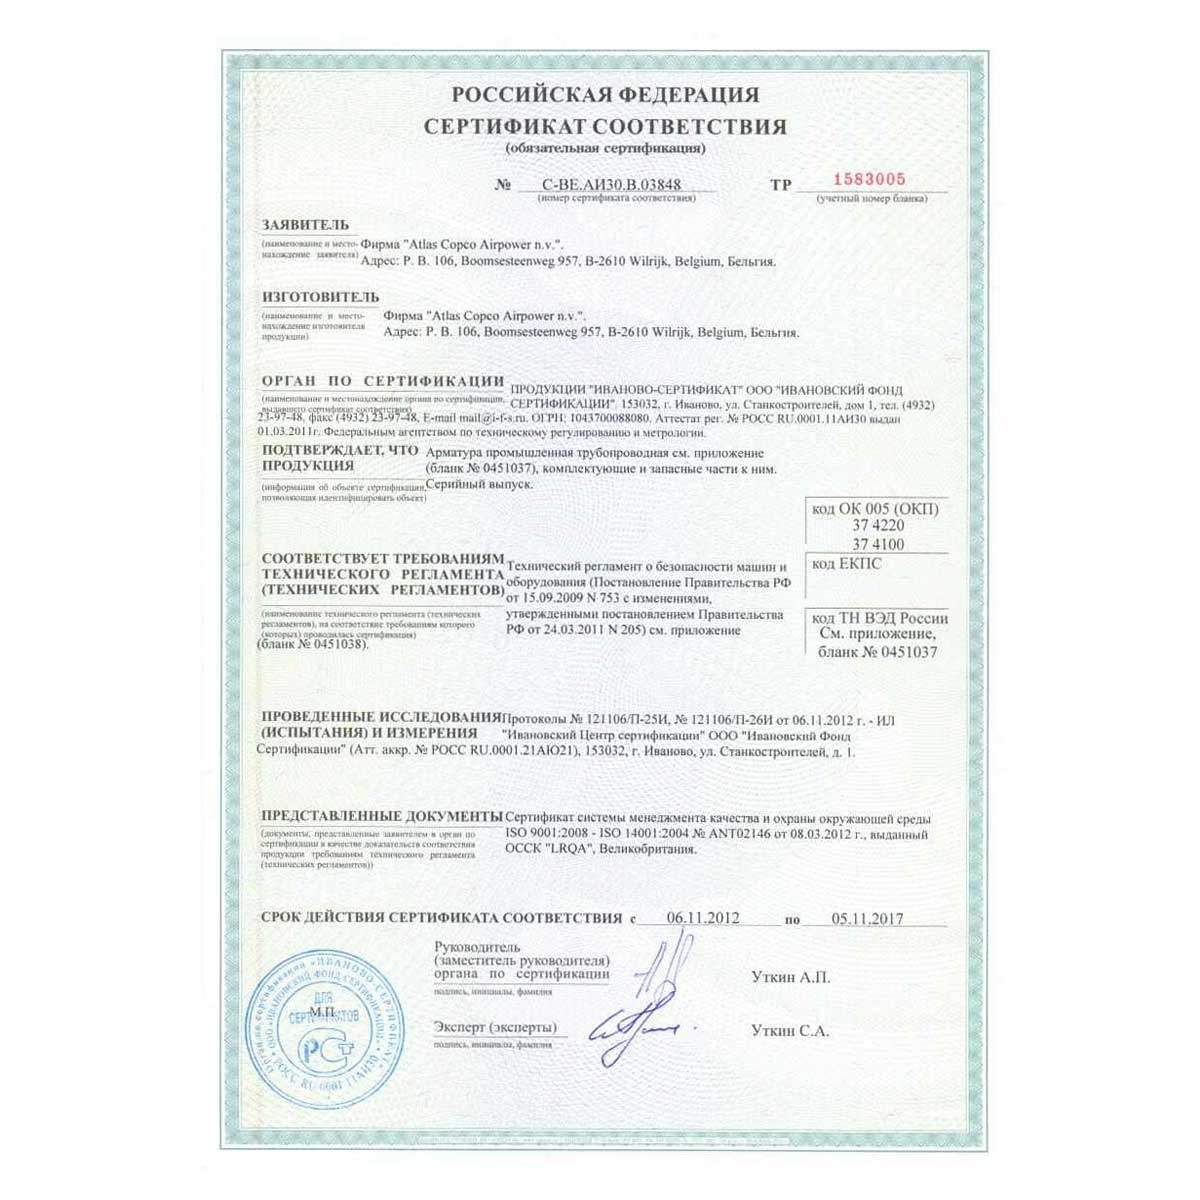 Сертификат соответсвия на запорные краны AIRnet